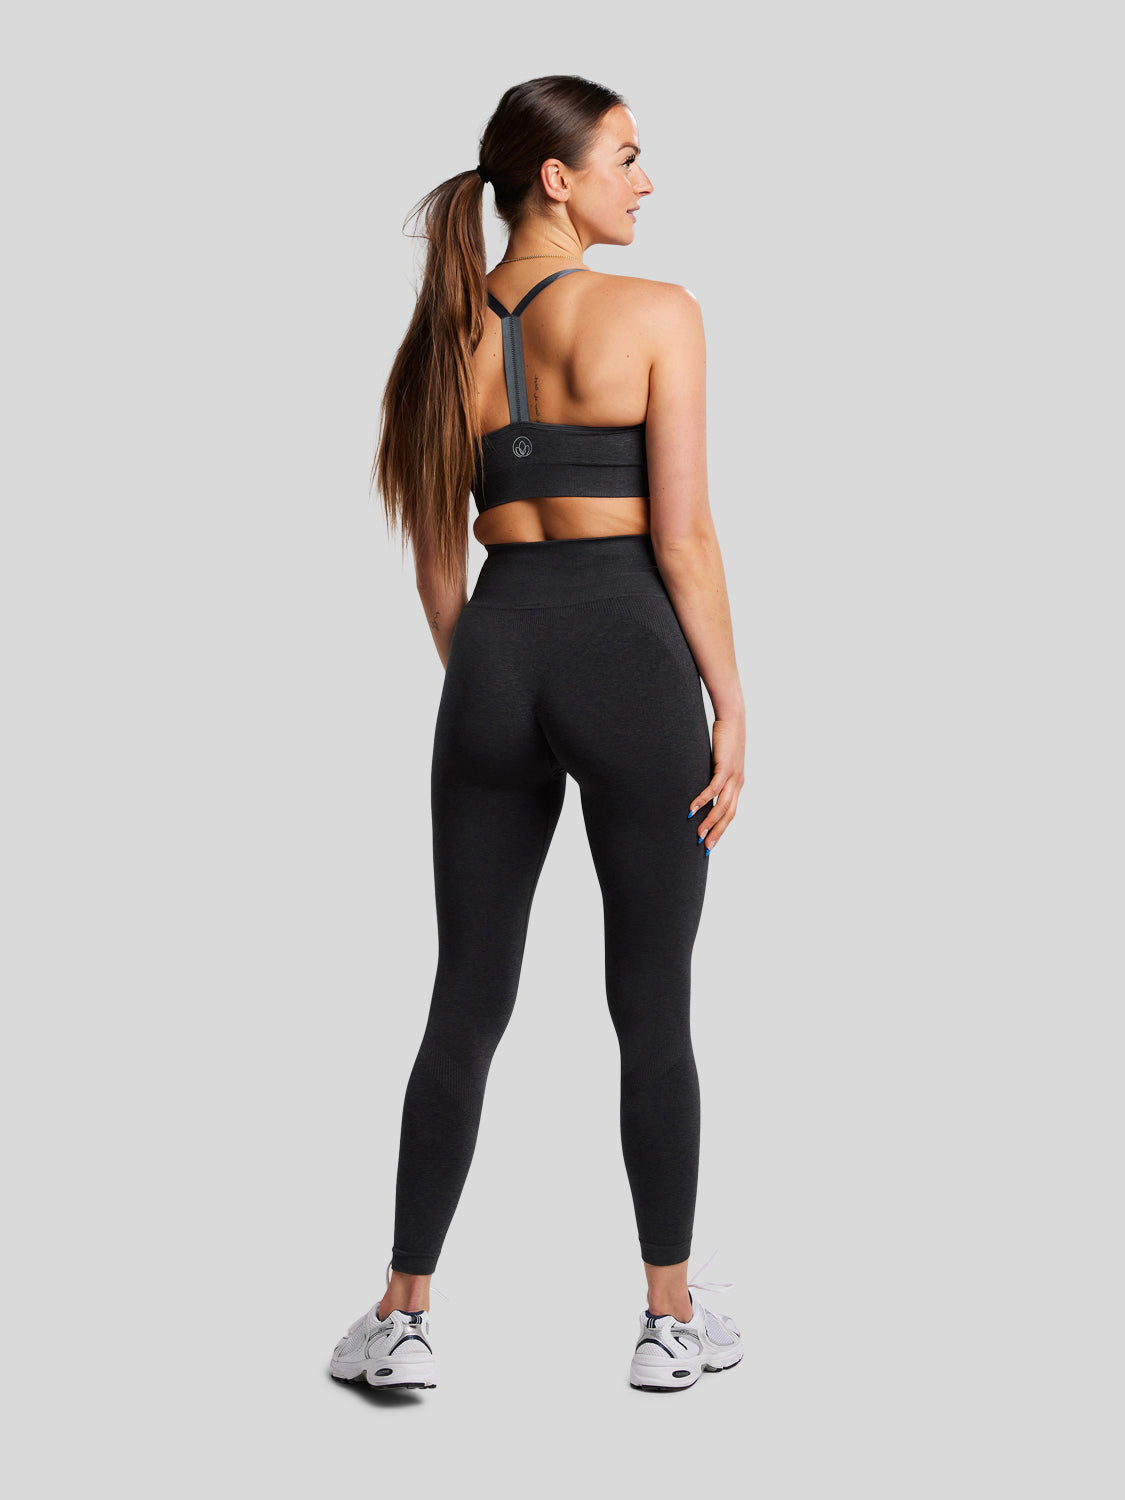 kvinde bagfra med seamless sports bh og seamless tights i farven black melange